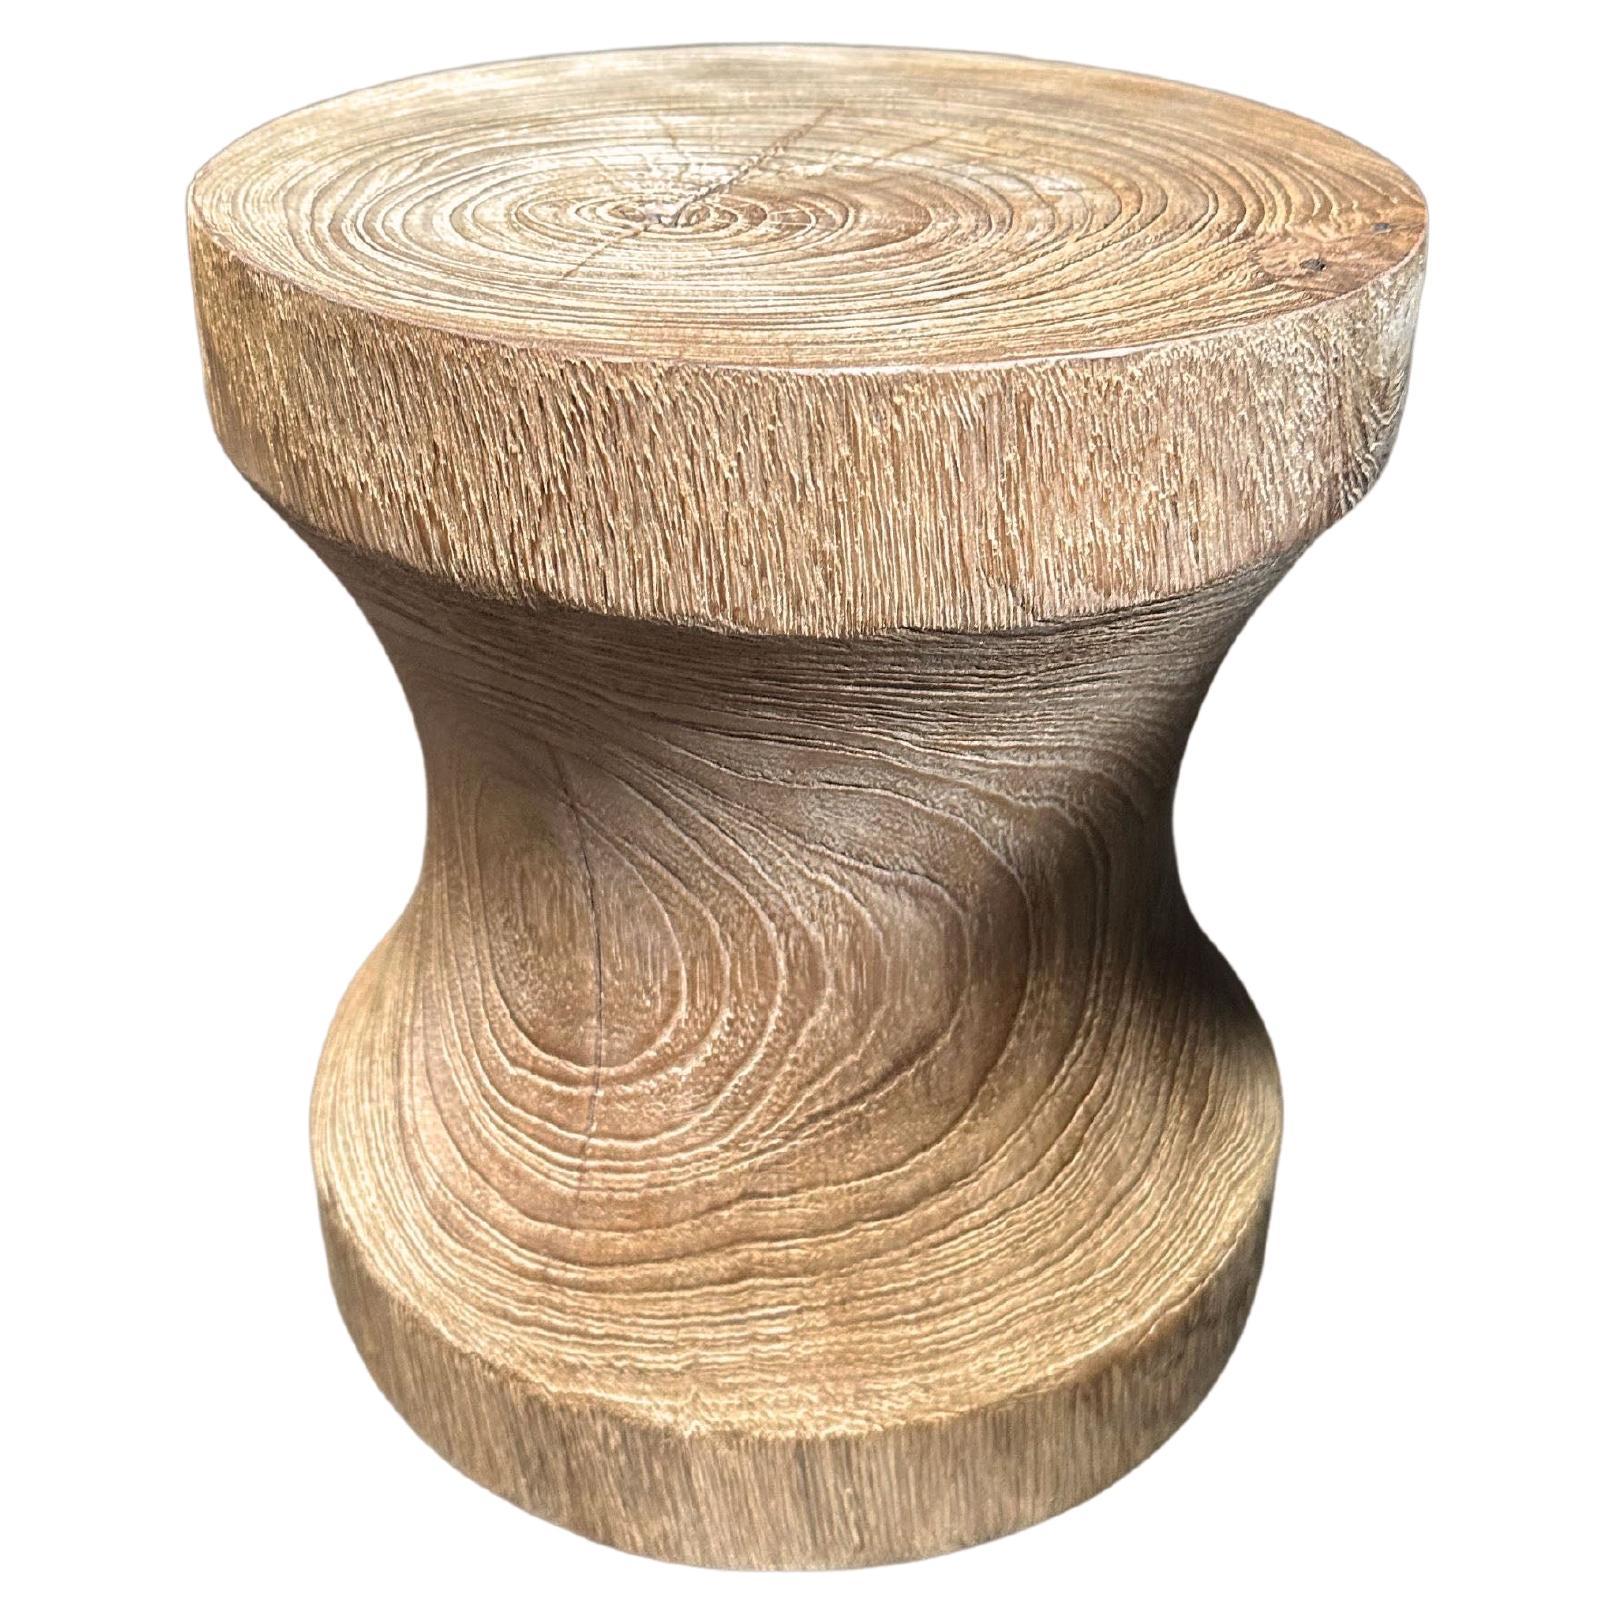 Table d'appoint sculpturale fabriquée en bois de teck, avec de superbes textures